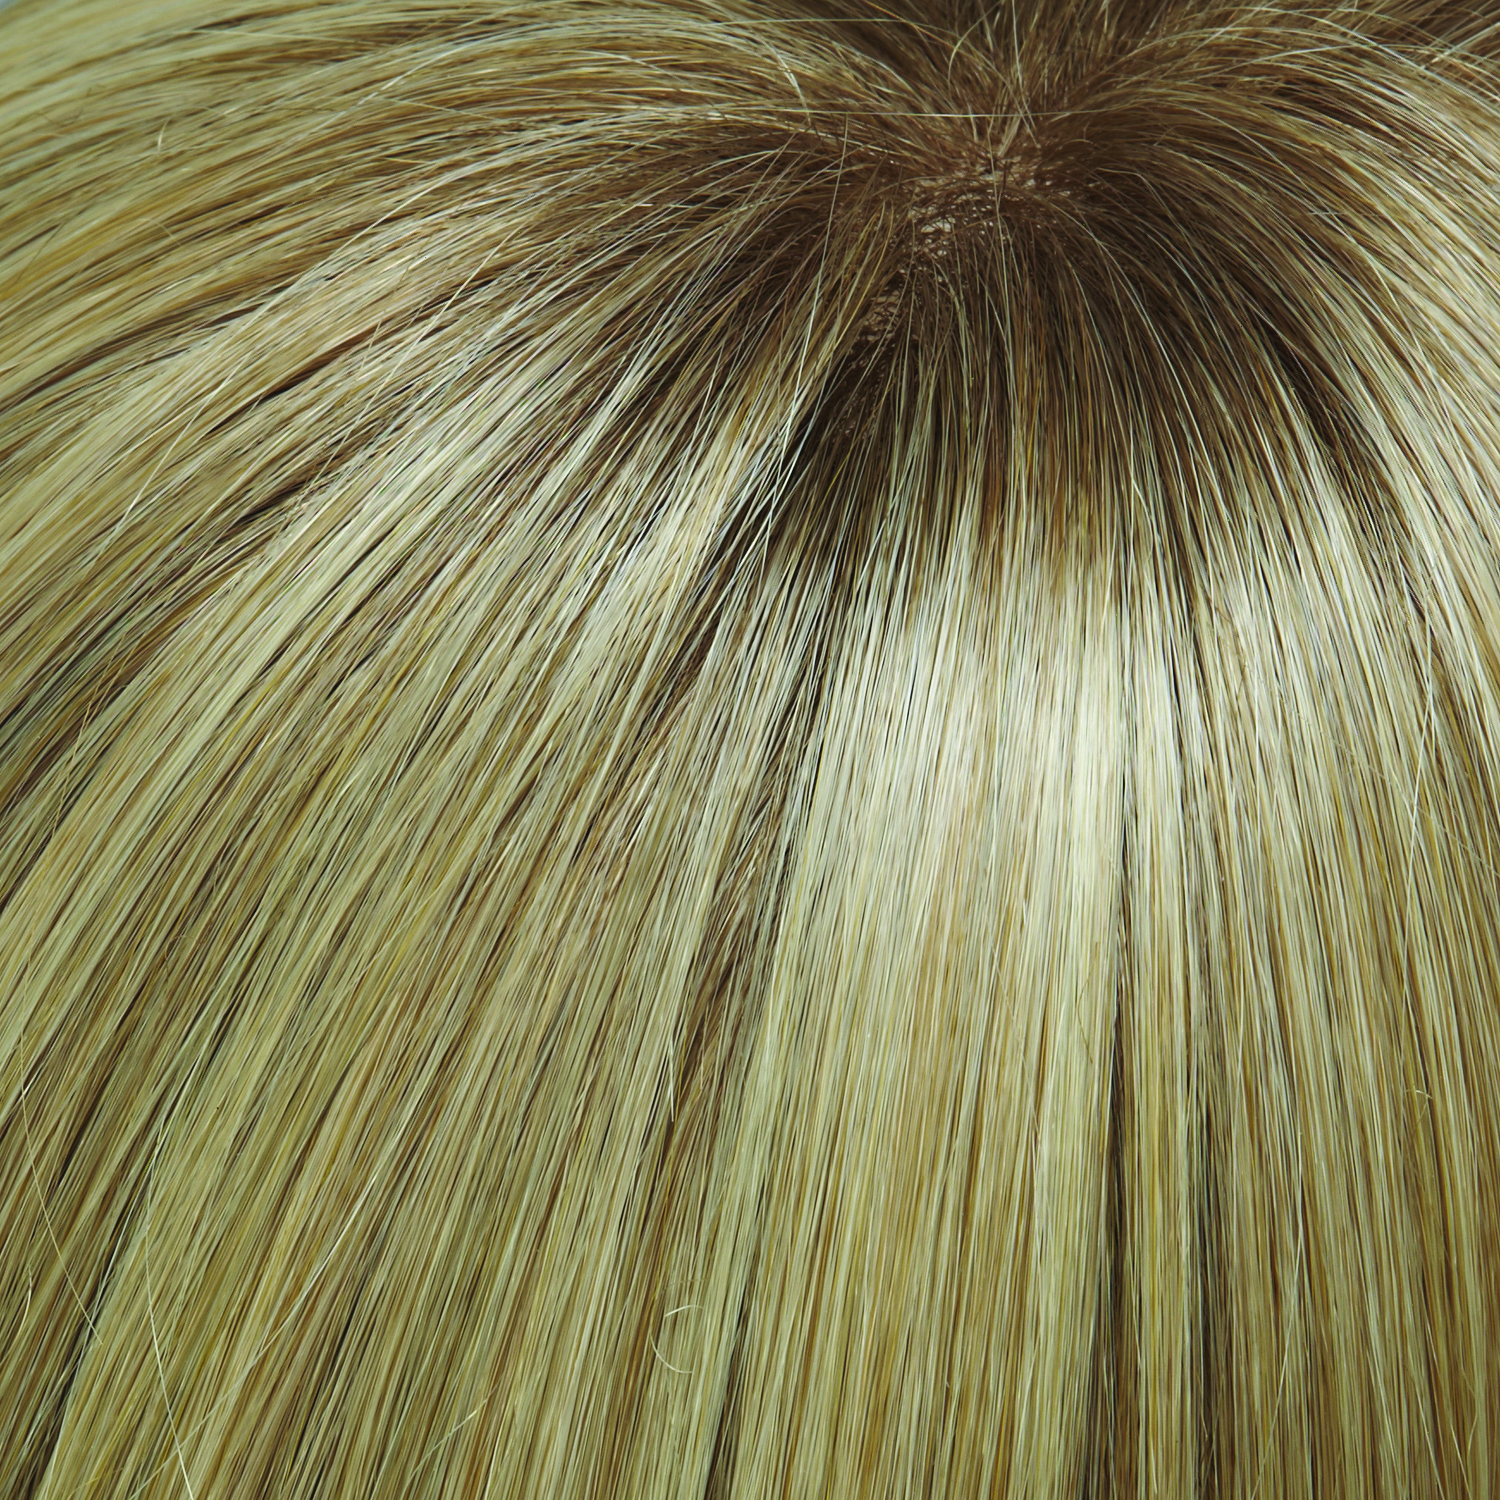 24613S12 - Medium Natural Ash Blonde & Pale Natural Gold Blonde Blend